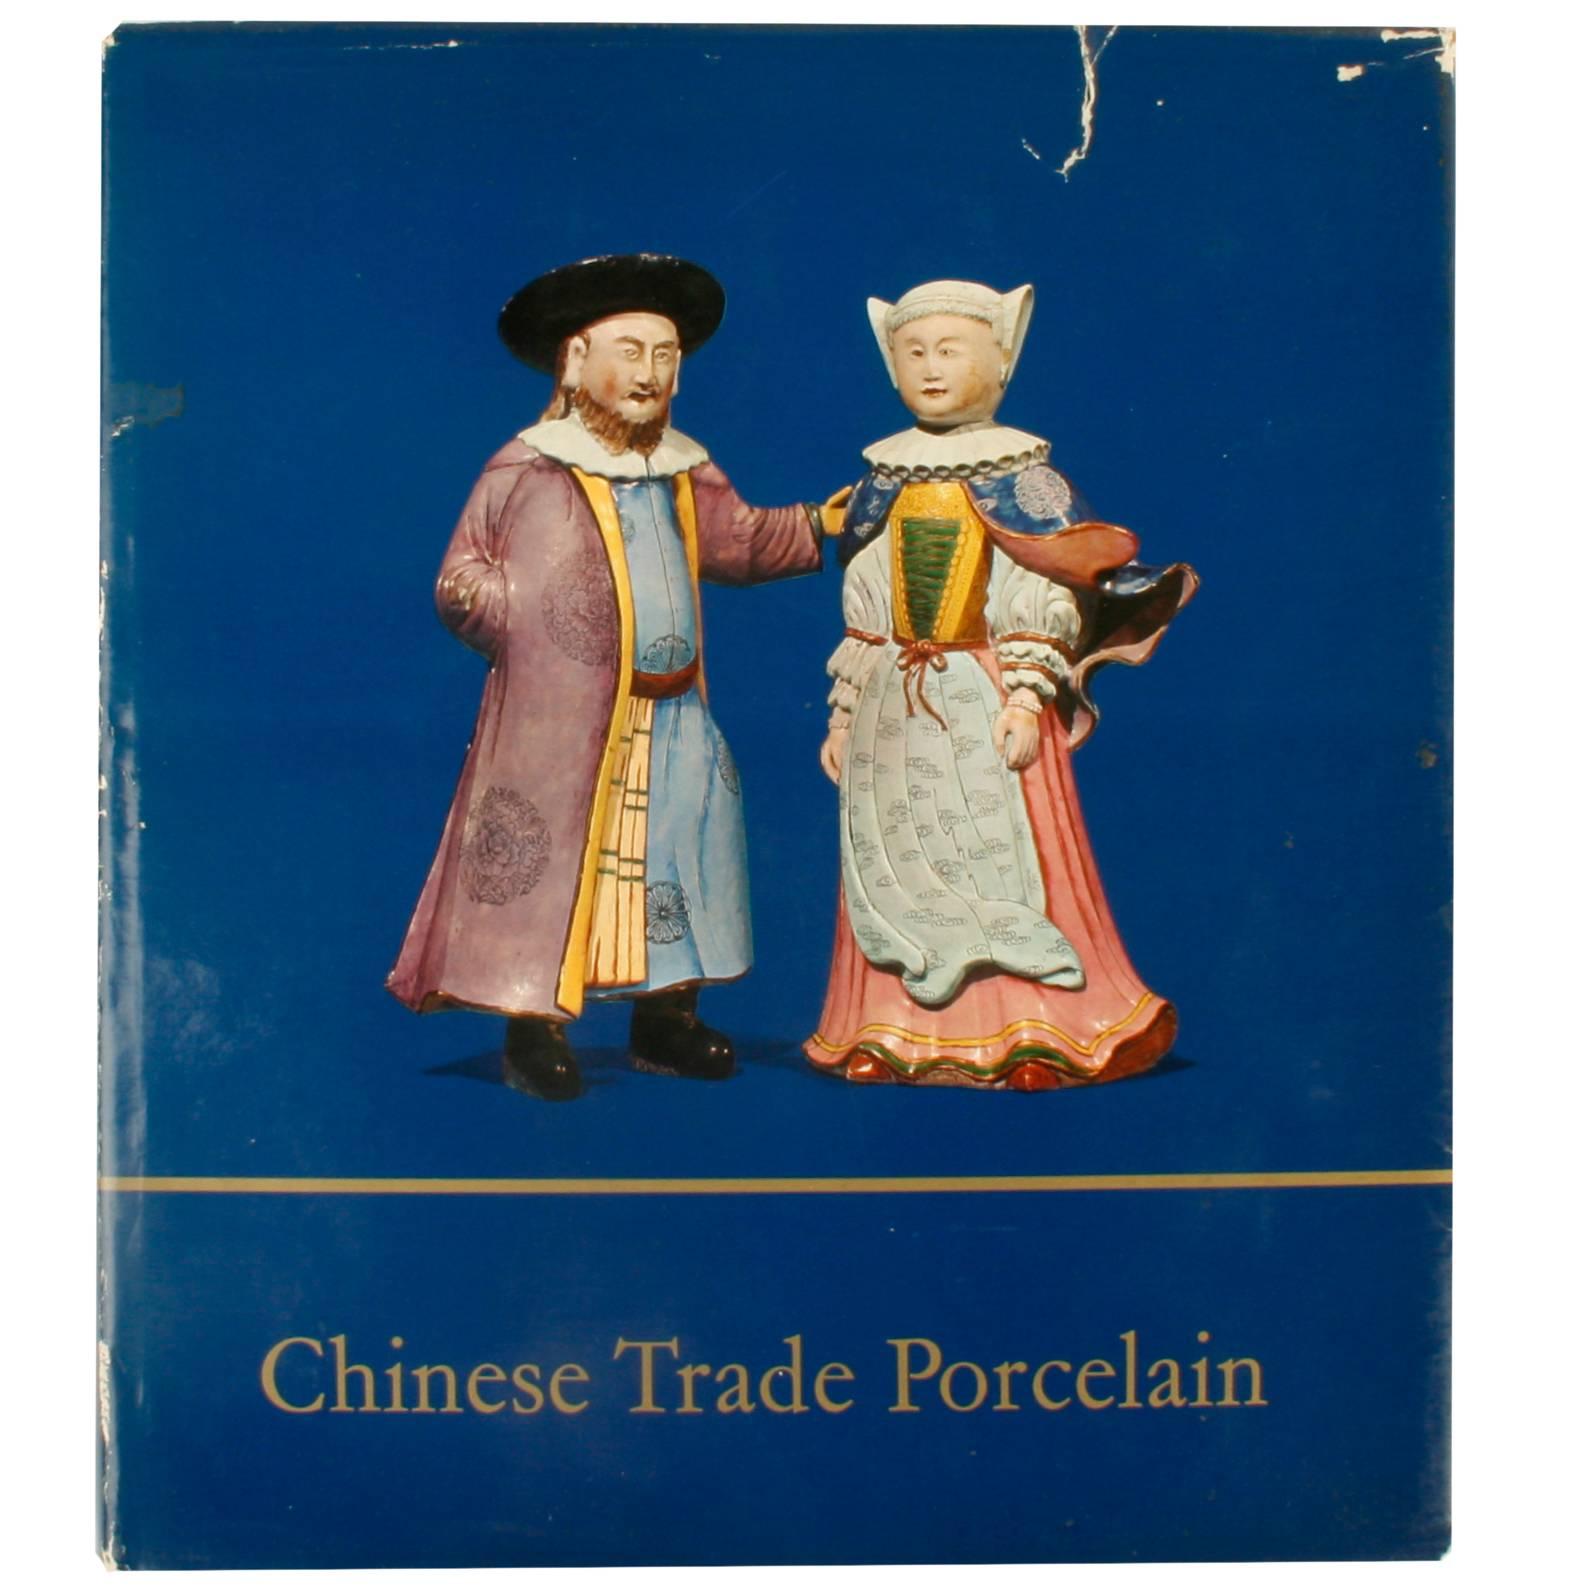 Porcelaine chinoise de commerce, première édition de Michel Beurdeley